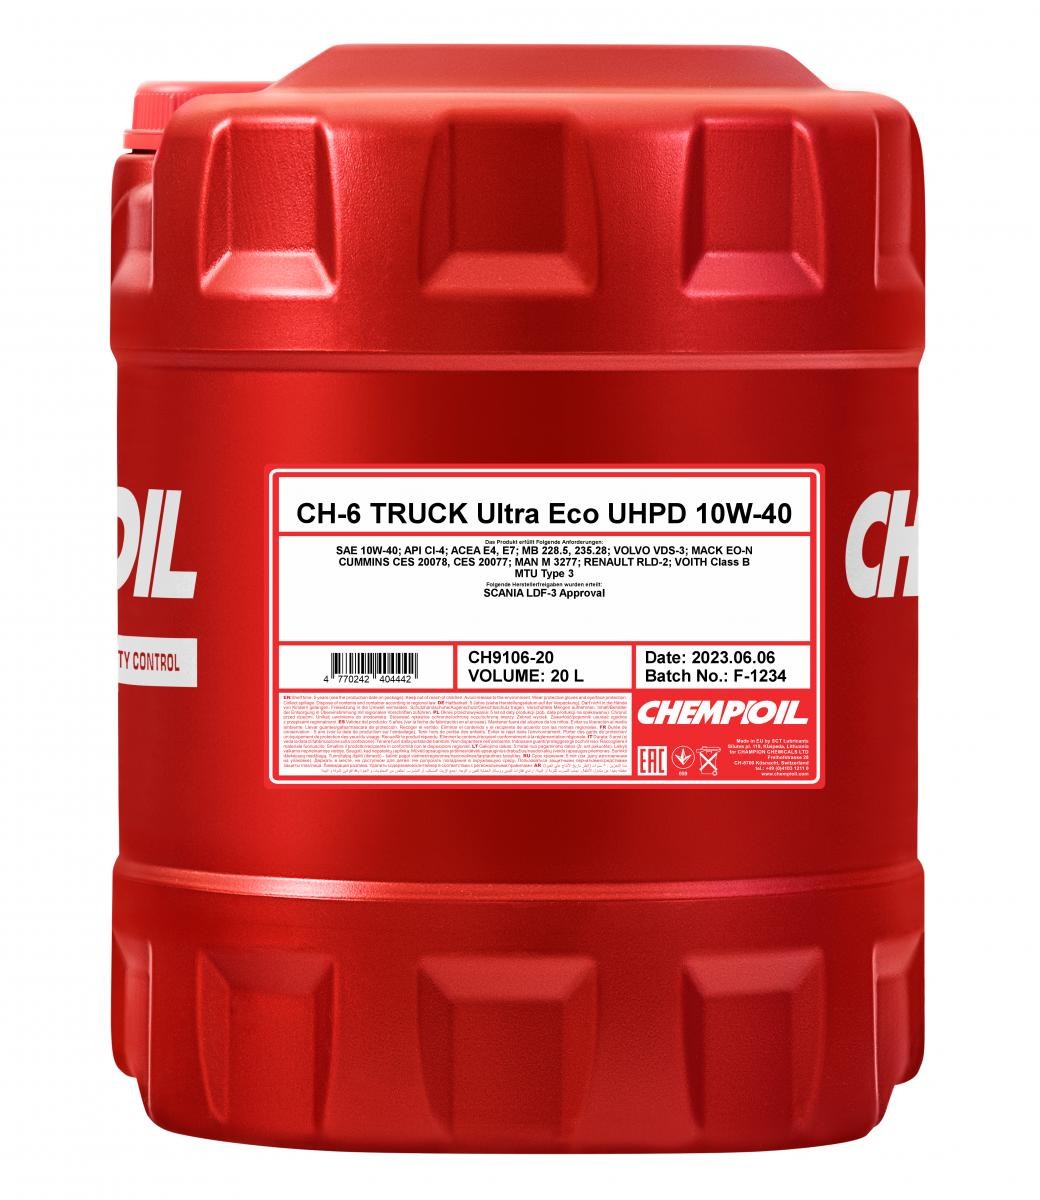 Buy Motor oil CHEMPIOIL petrol CH9106-20 Truck, UHPD Ultra Eco CH-6 10W-40, 20l